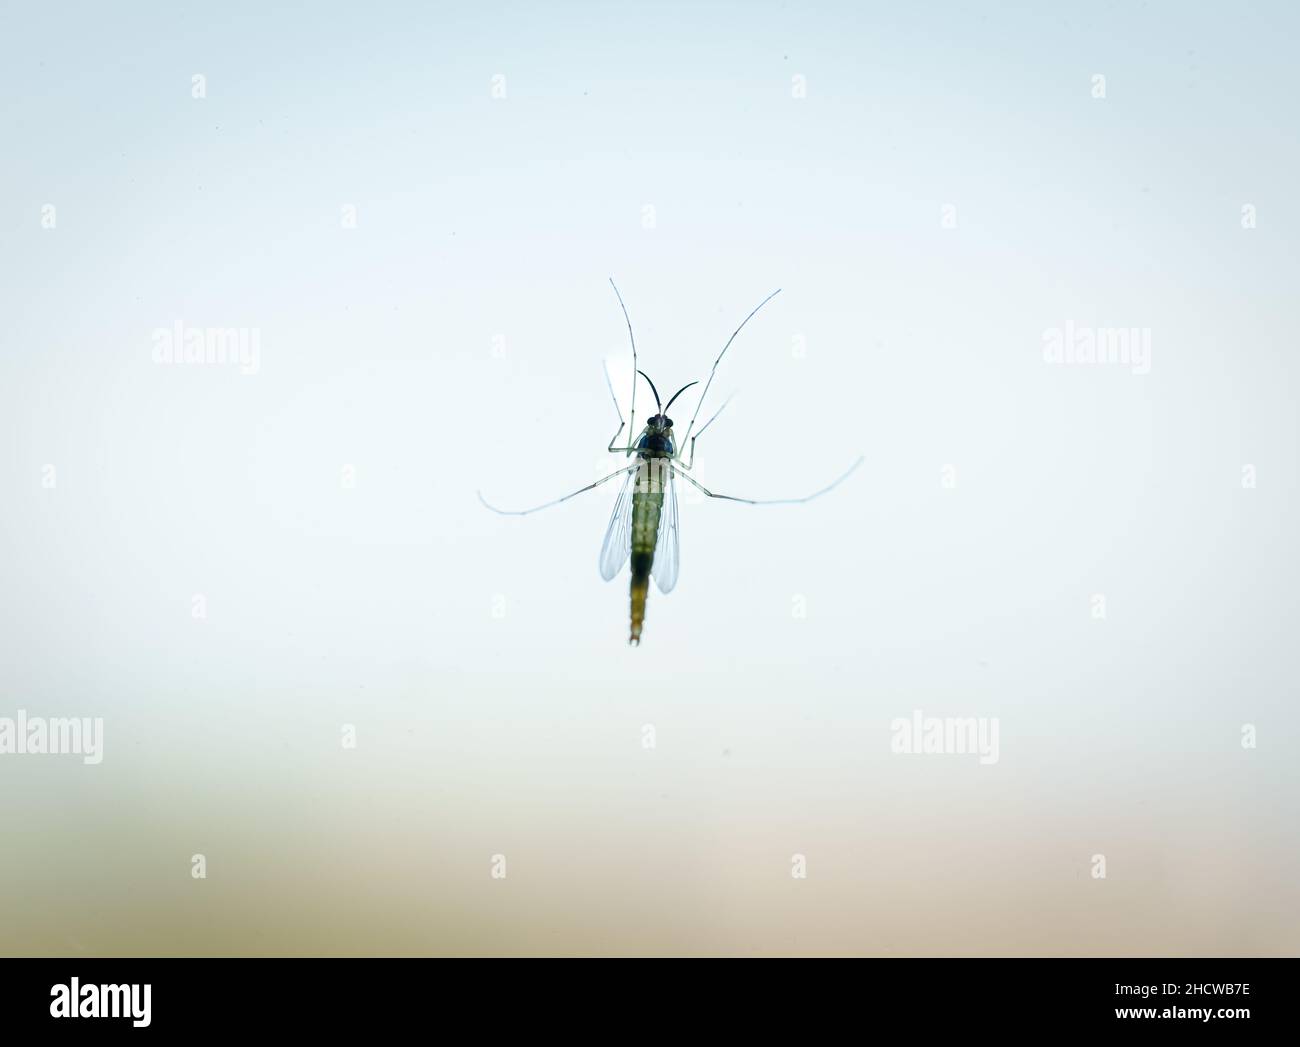 Moskito durch das Glas gesehen. Mückengeboren Krankheiten Konzept. Stockfoto